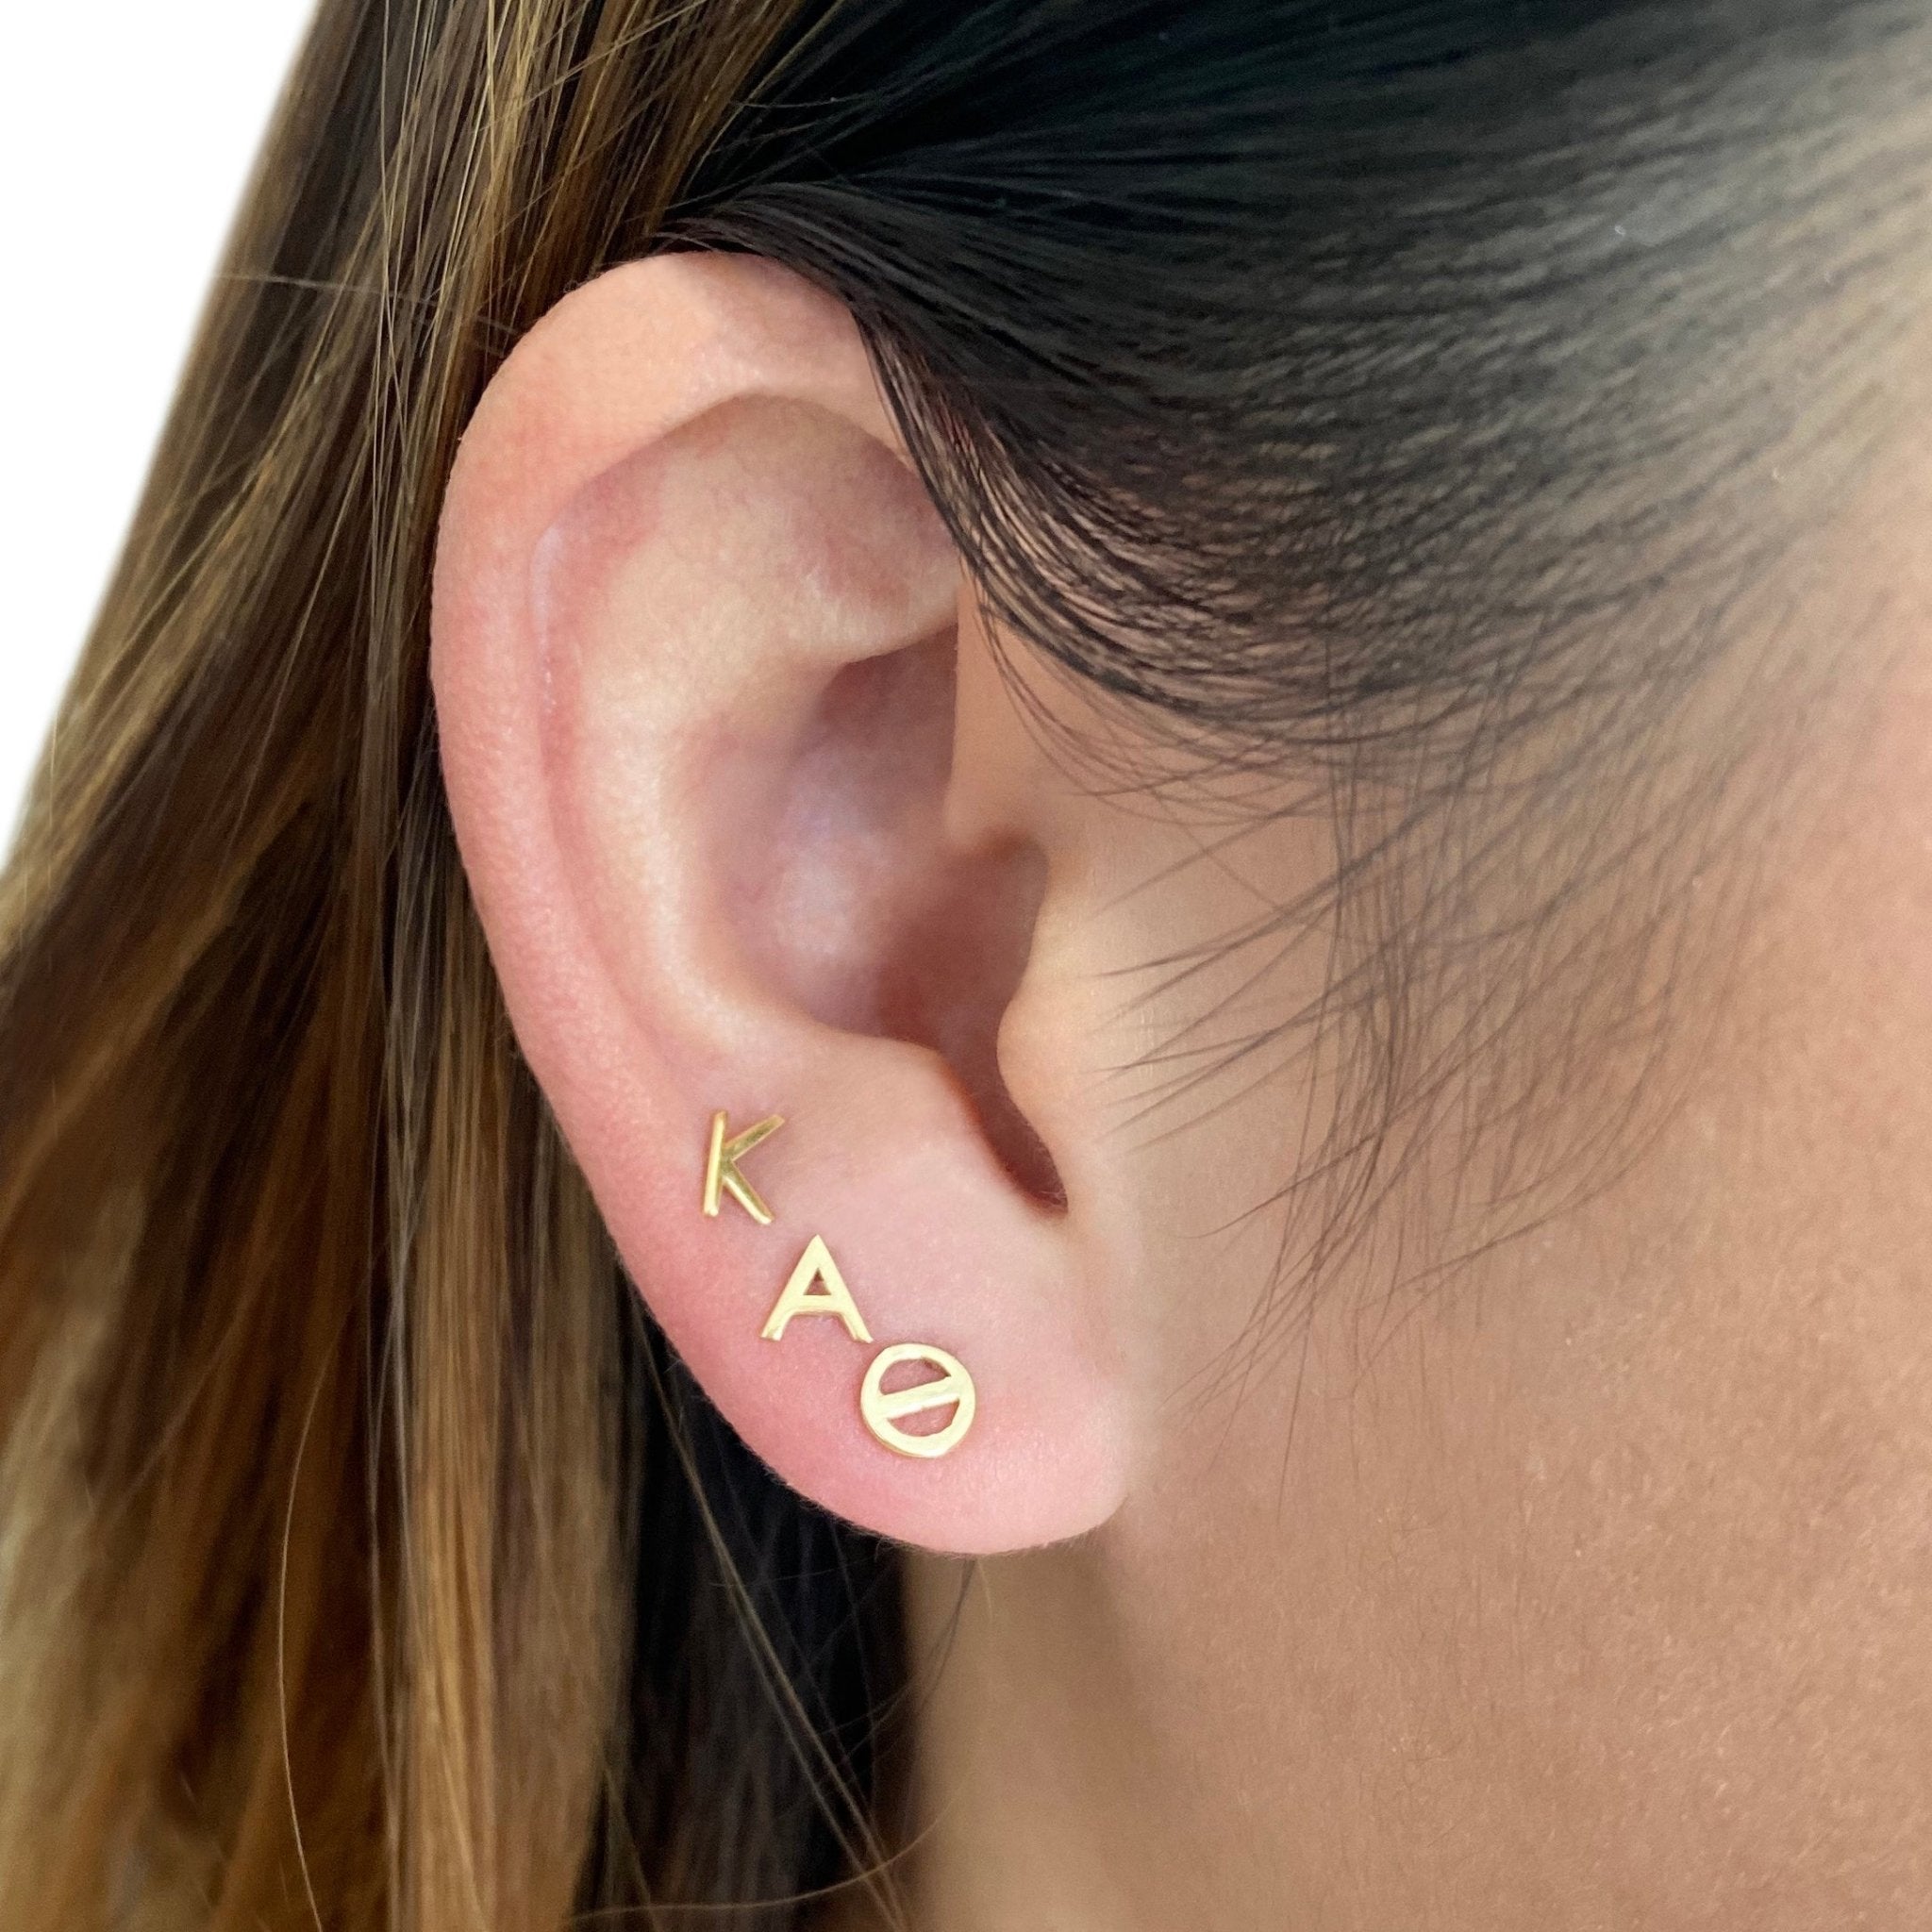 Kappa Alpha Theta earrings in 14k gold